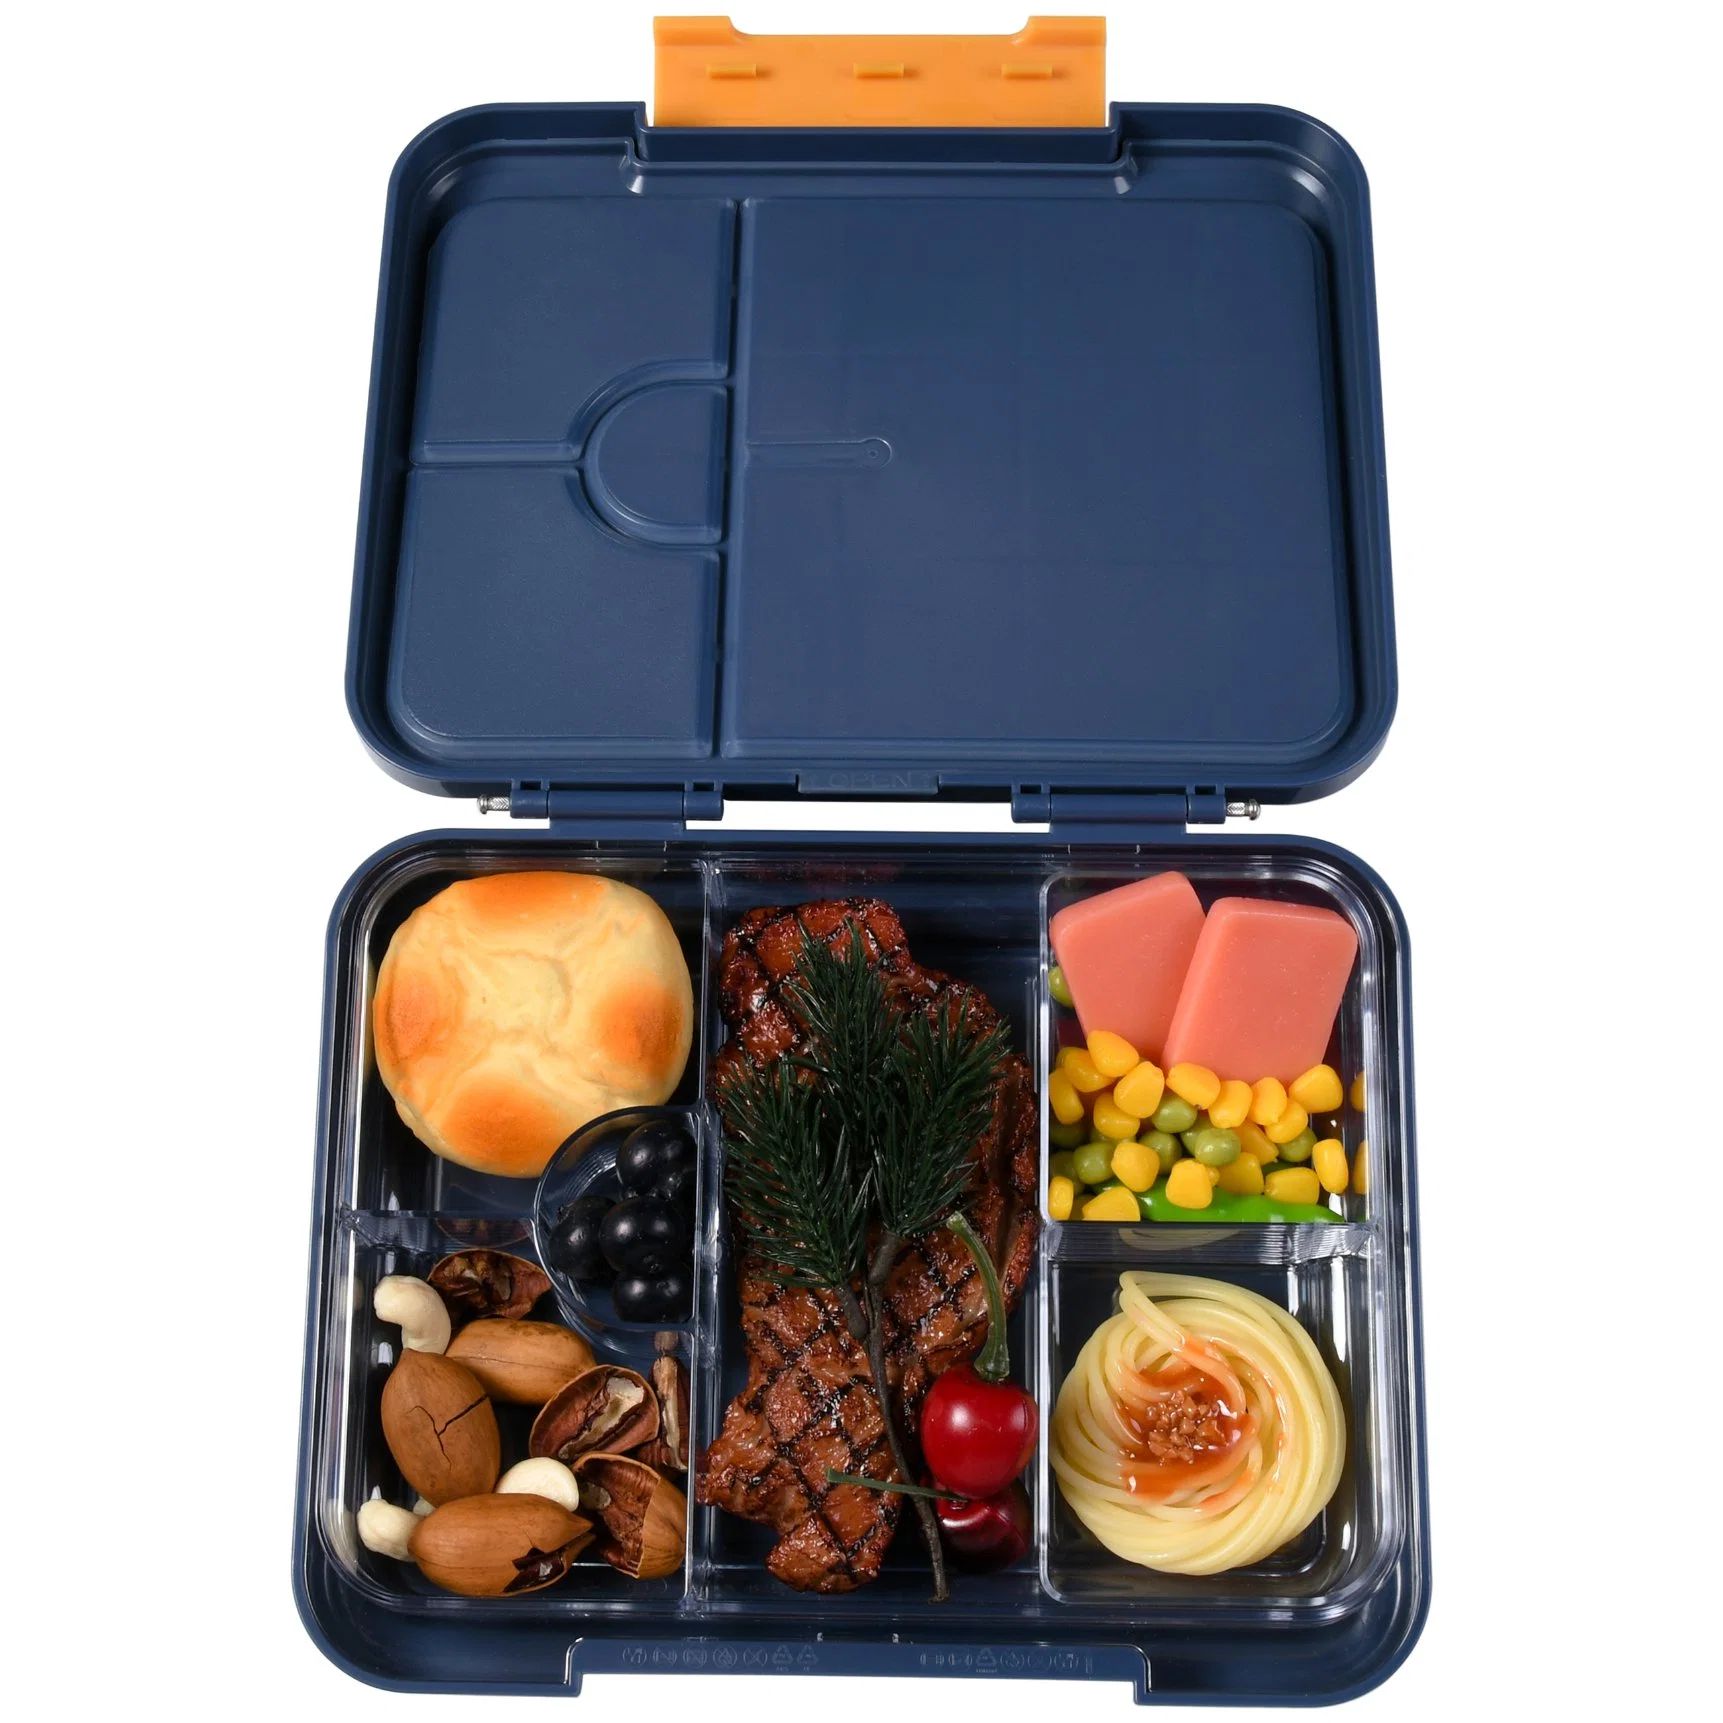 2023 BPA almoço livre microondas Cofre jantar Sandwich Suhsi Bento Caixa almoço caixa recipiente alimentos aquecedor de alimentos recipiente plástico inoxidável Caixa de almoço em aço Kawaii Ta